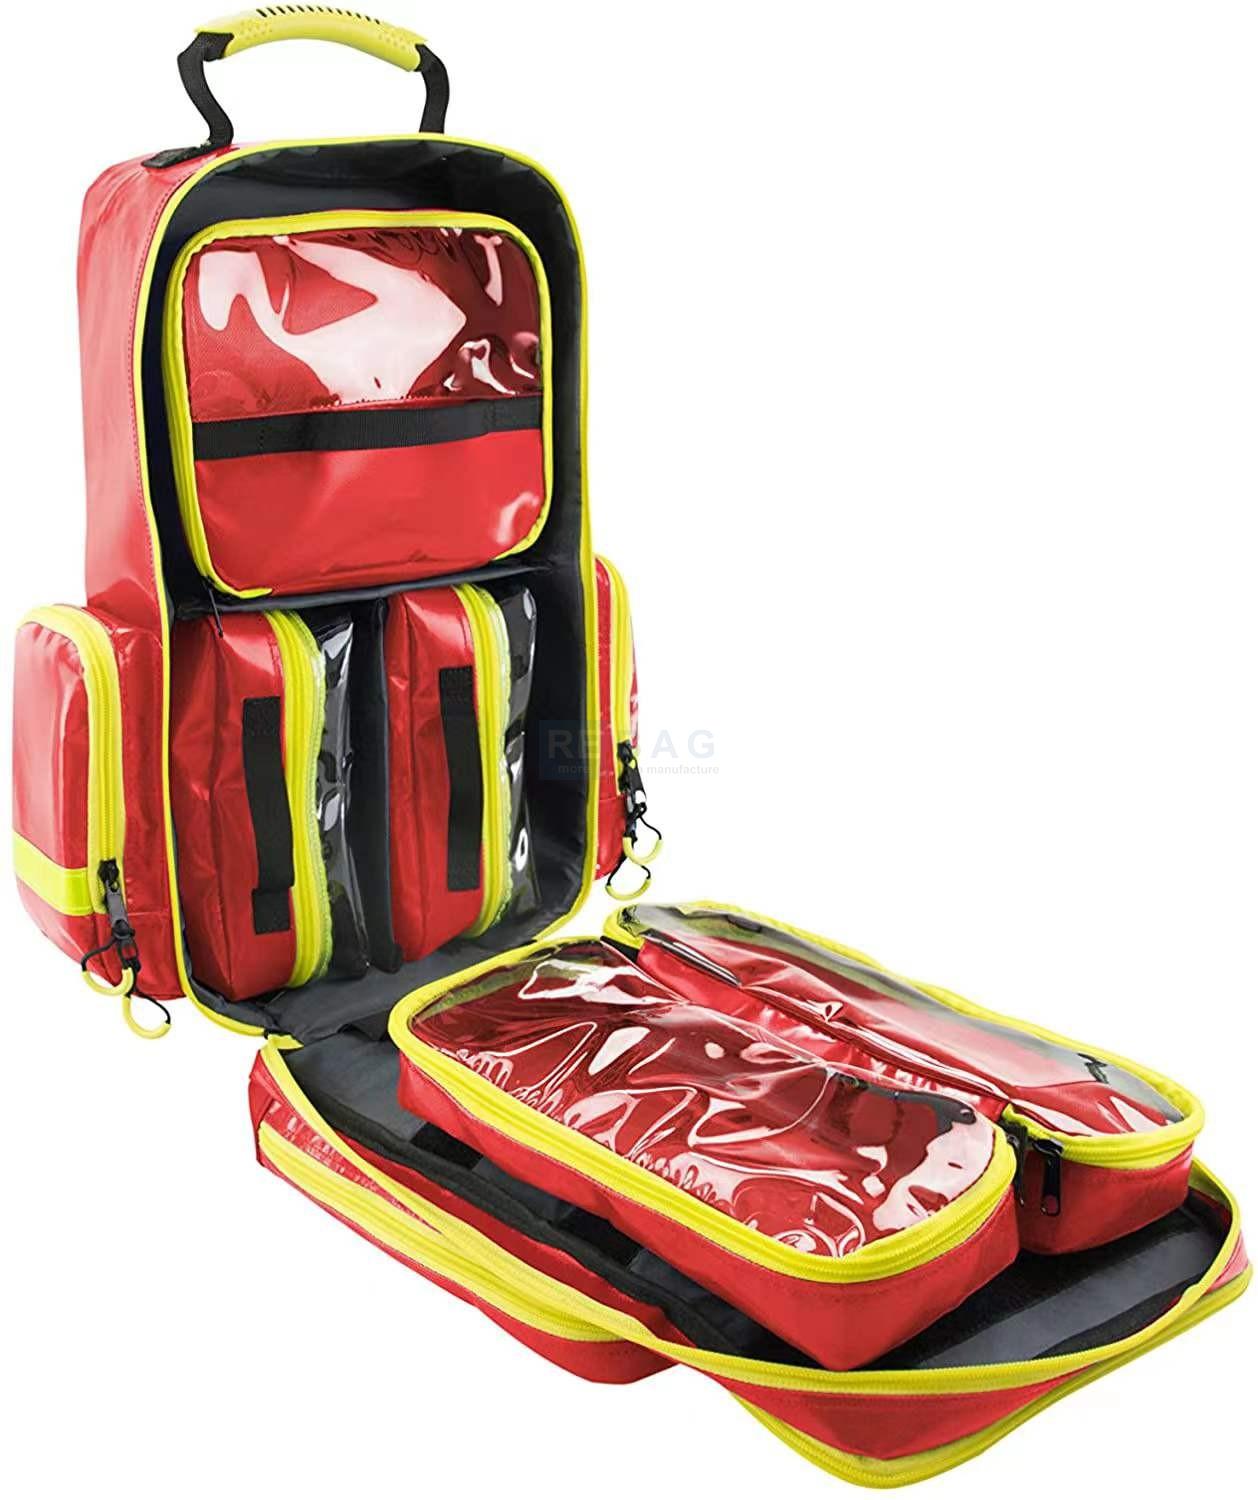 emergency backpack